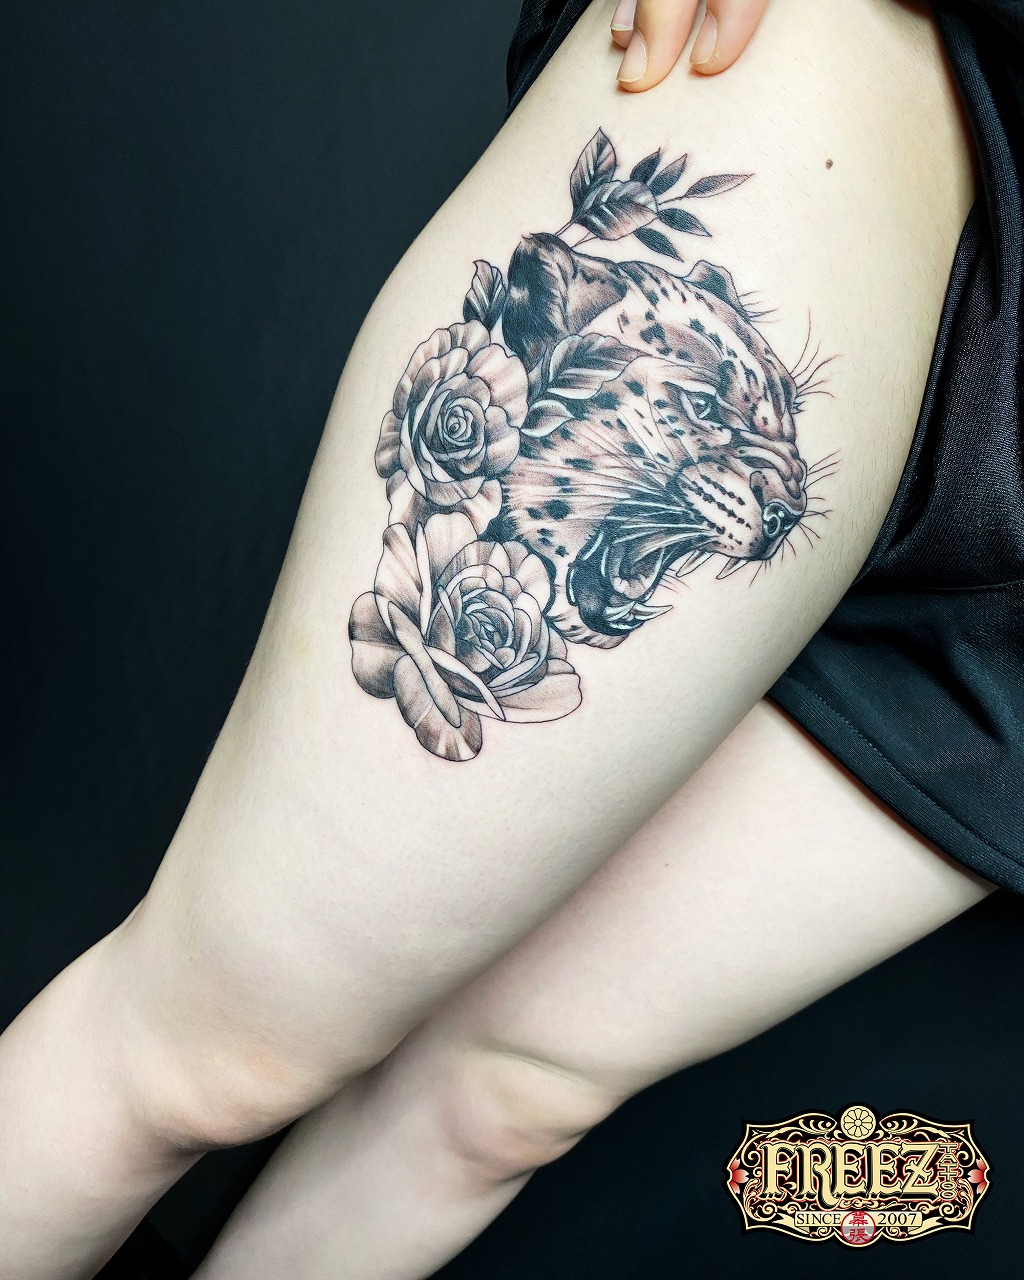 太ももに豹と薔薇のタトゥーtattoo 千葉幕張刺青irezumi 千葉女性彫師sao 千葉タトゥーは千葉市花見川区幕張本郷のfree Z Tattoo フリーズタトゥー